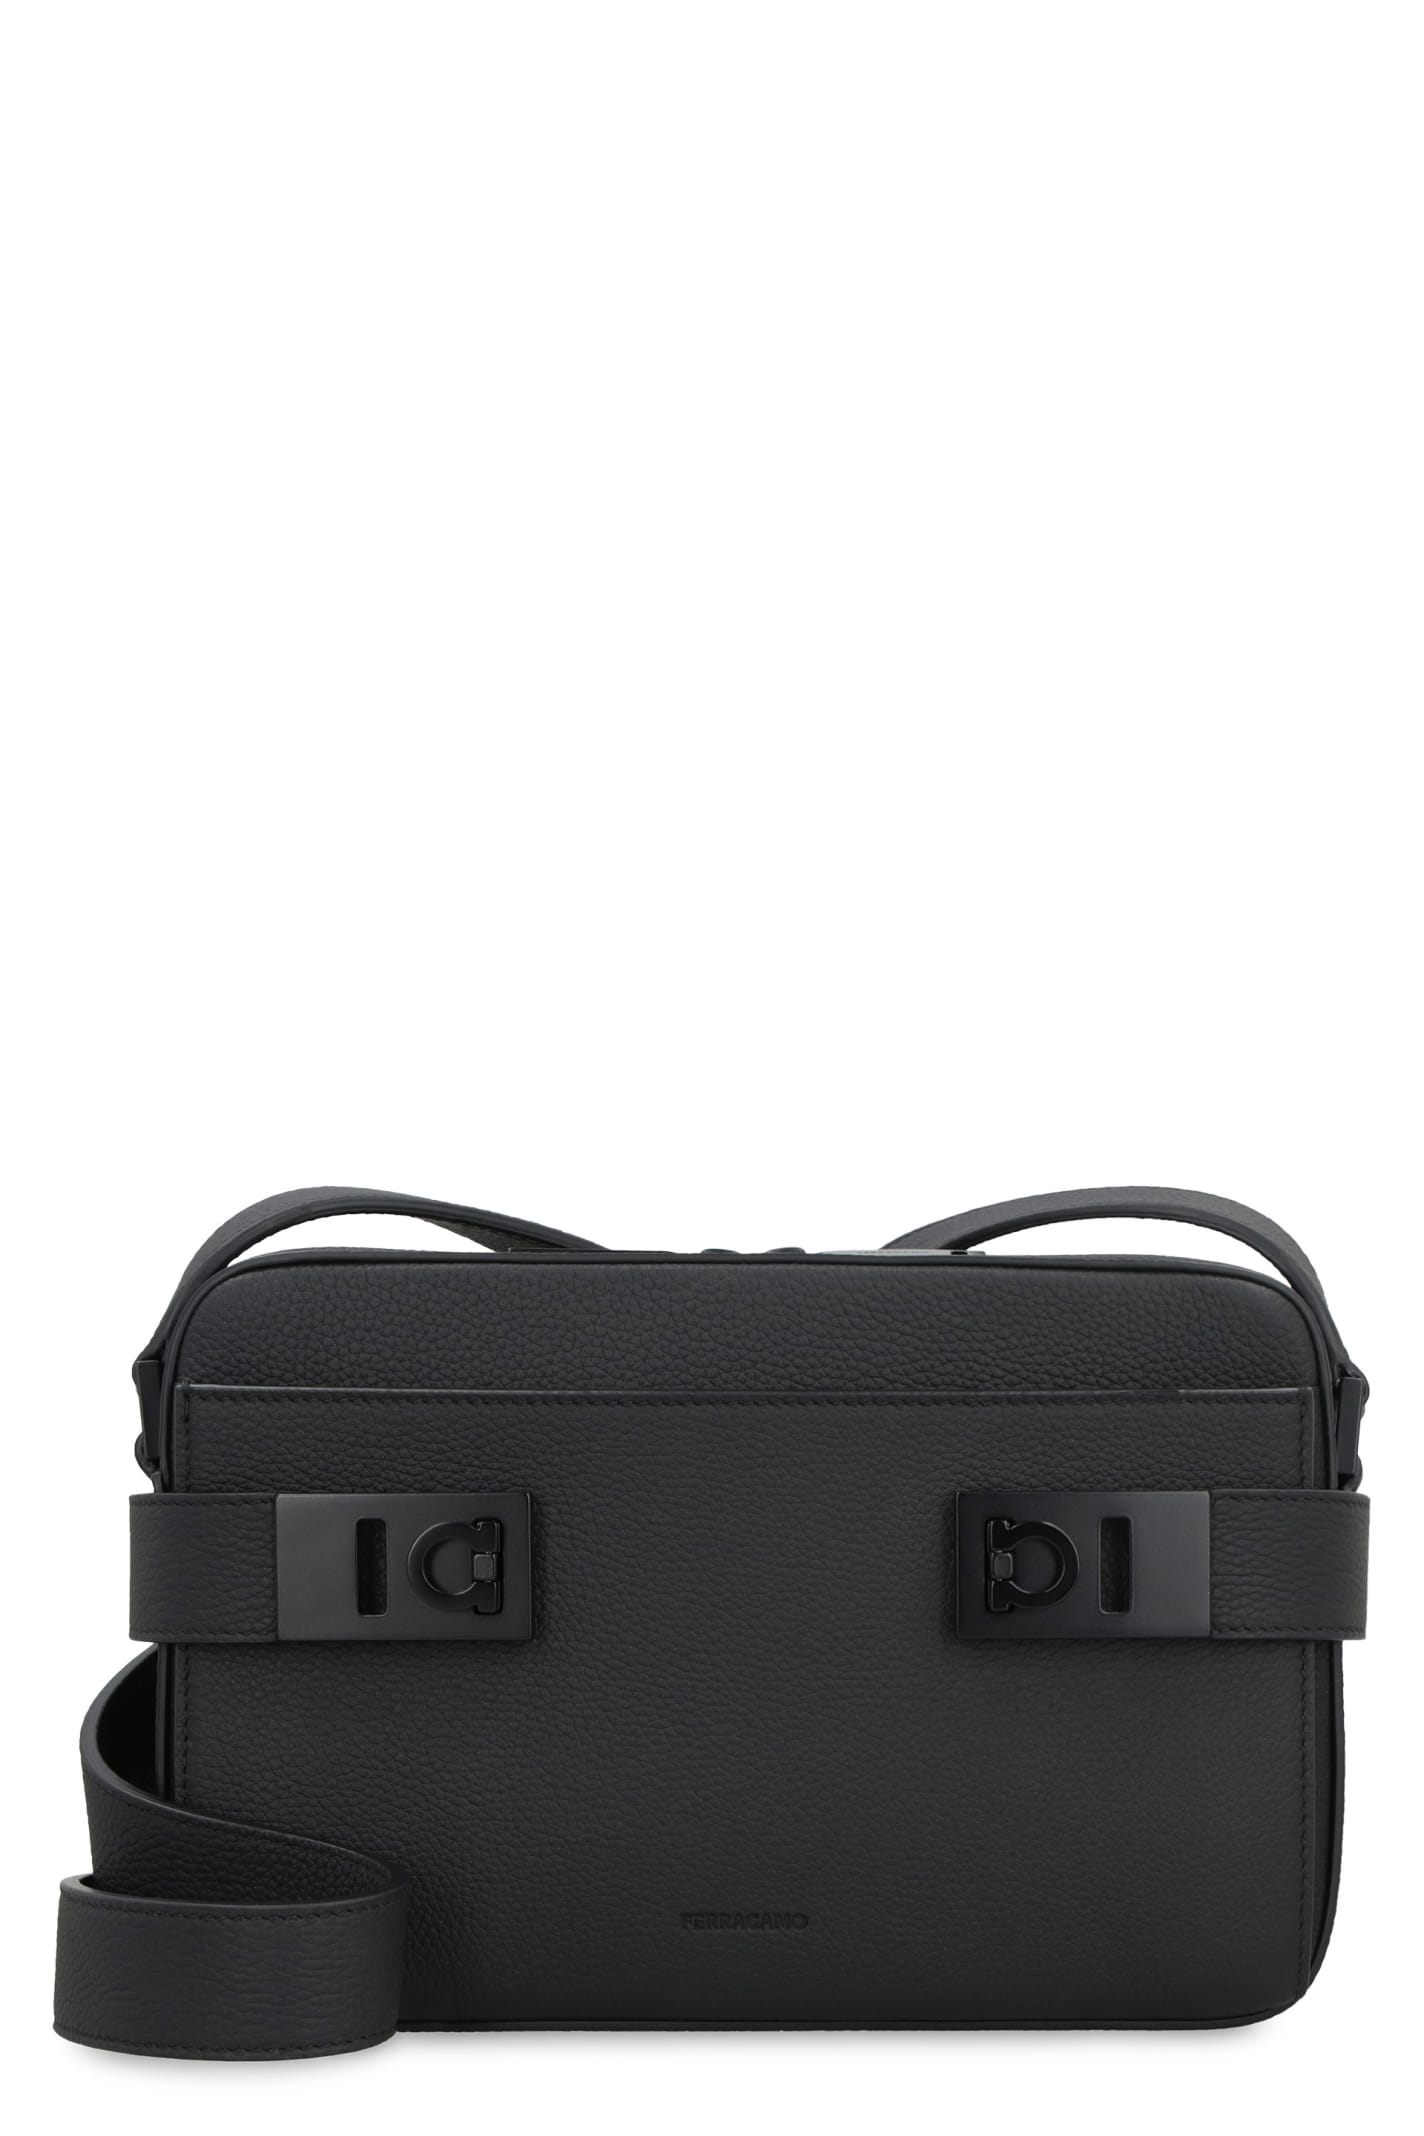 Ferragamo Gancini Leather Shoulder Bag In Black